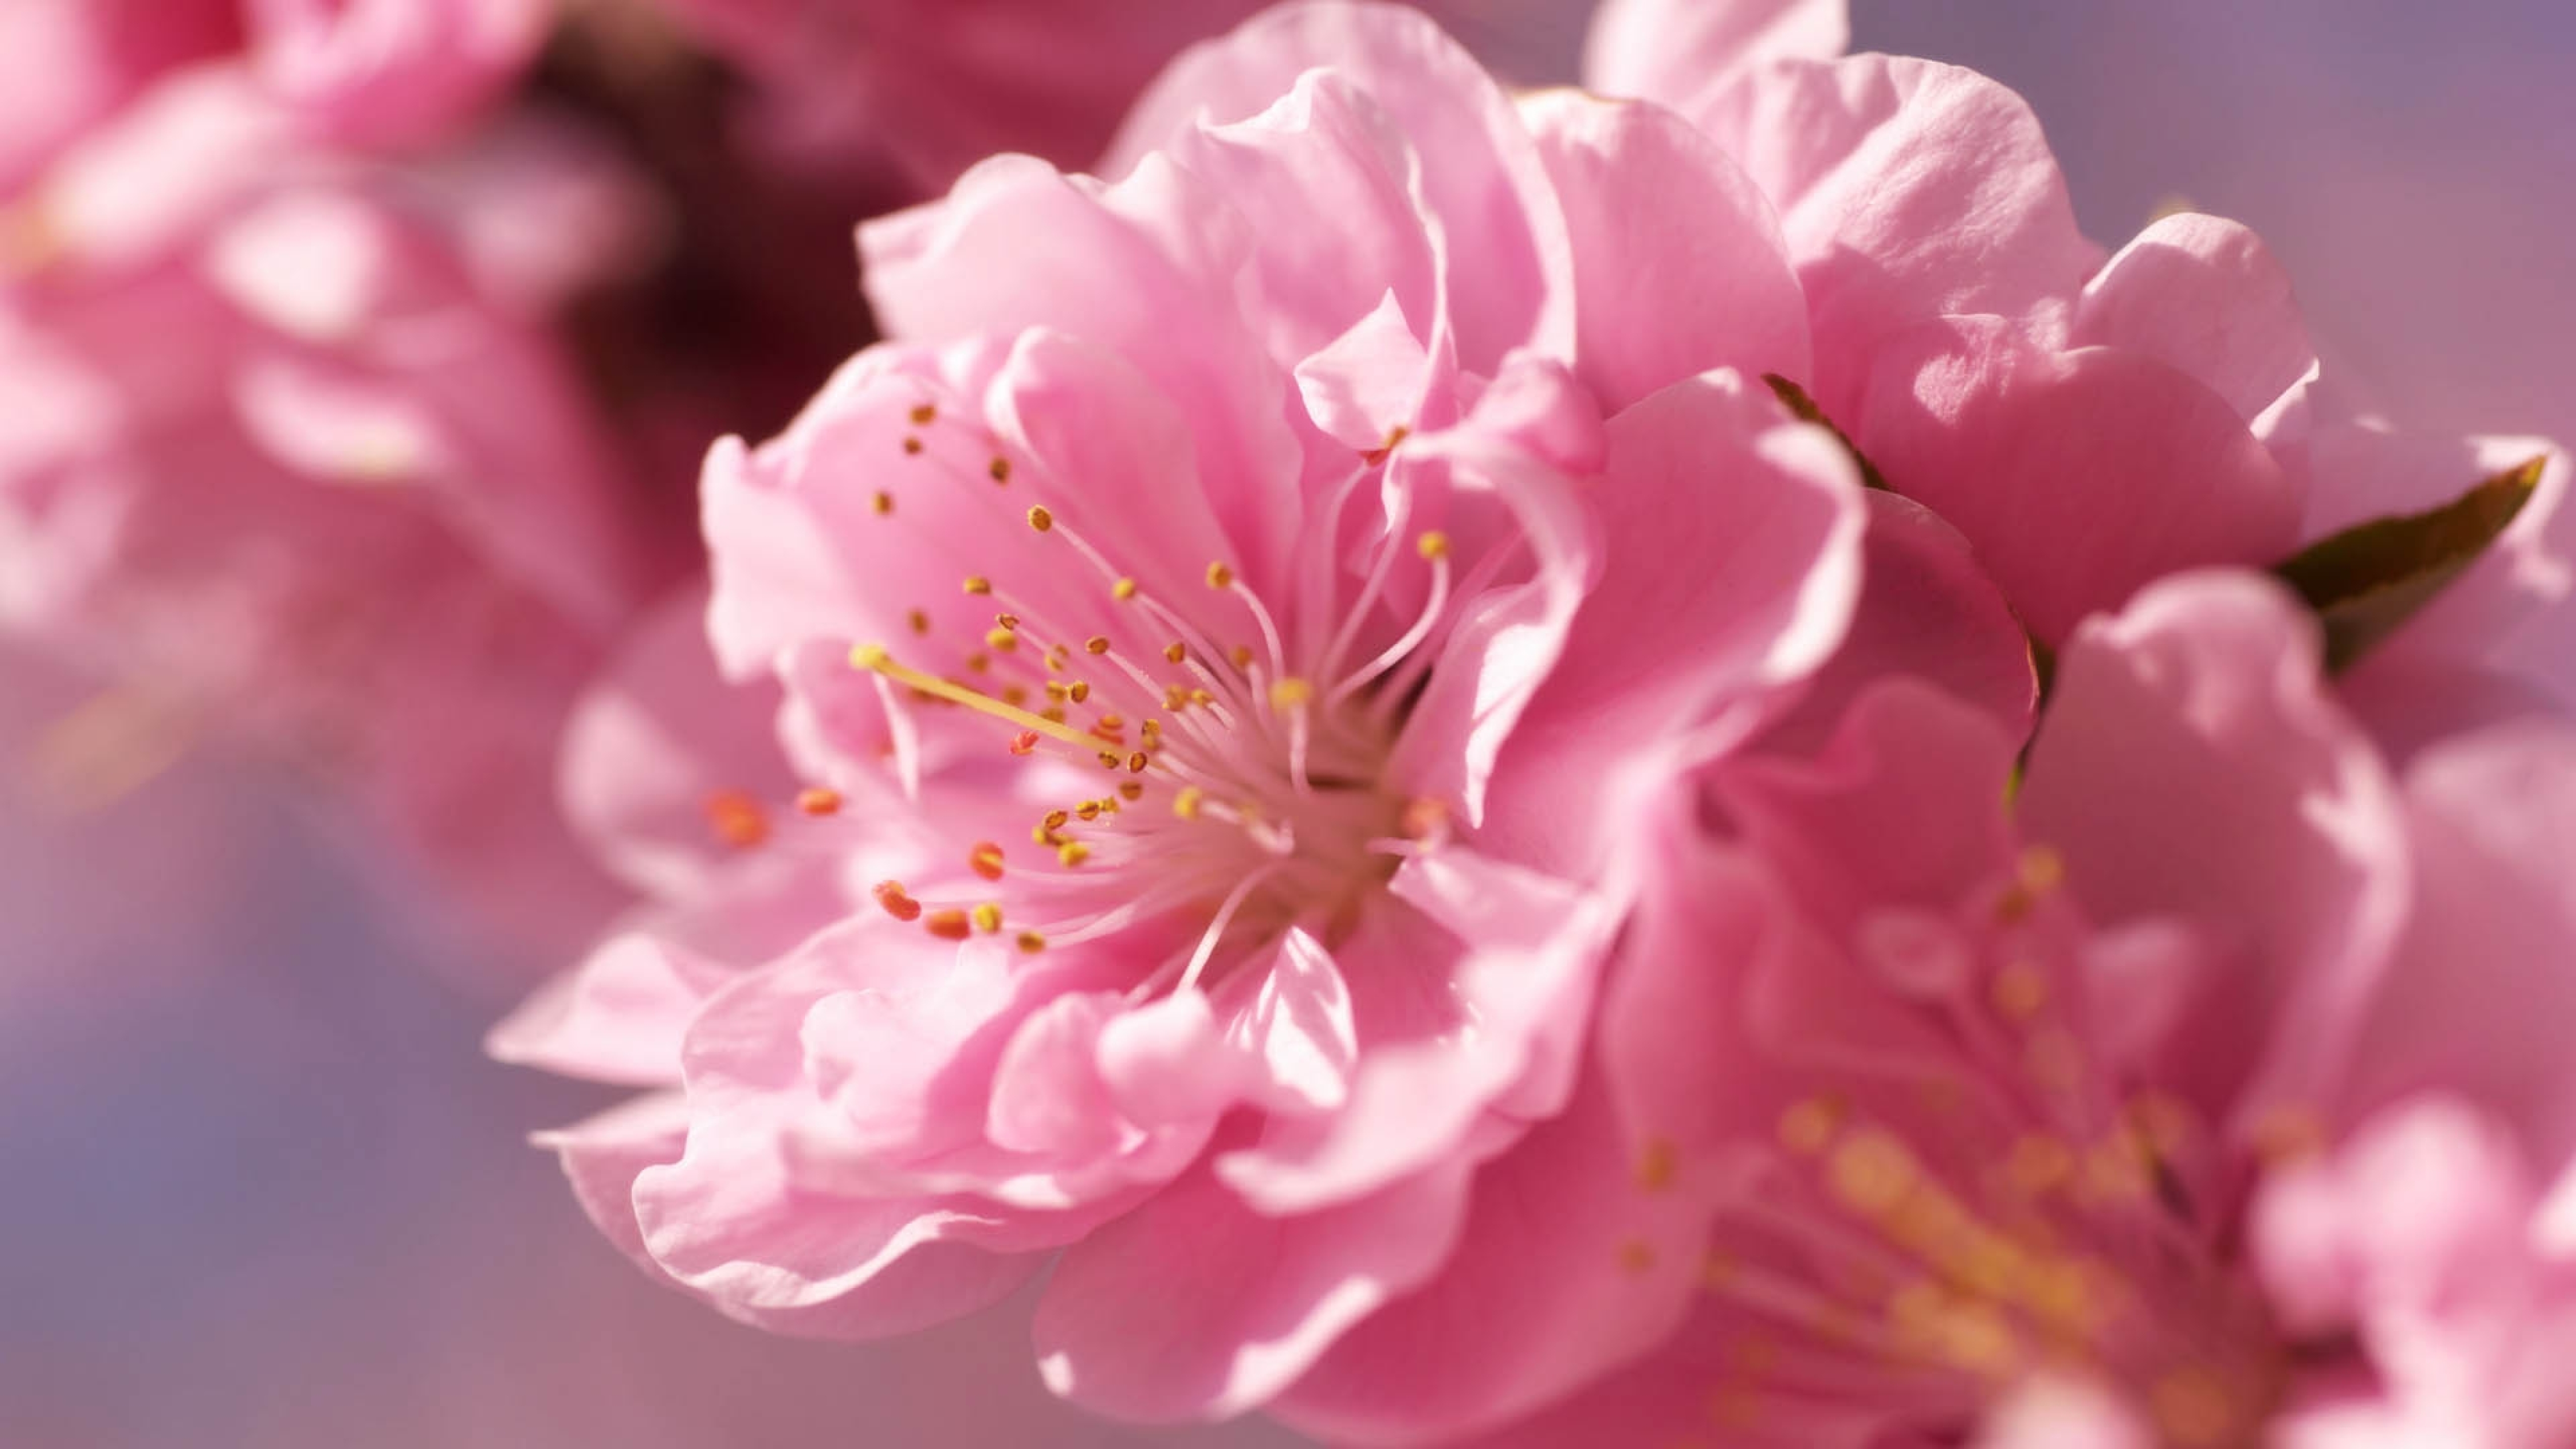 Фото в цвете. Пионы и Сакура. Розовые цветы. Нежный цветок. Крупные розовые цветы.